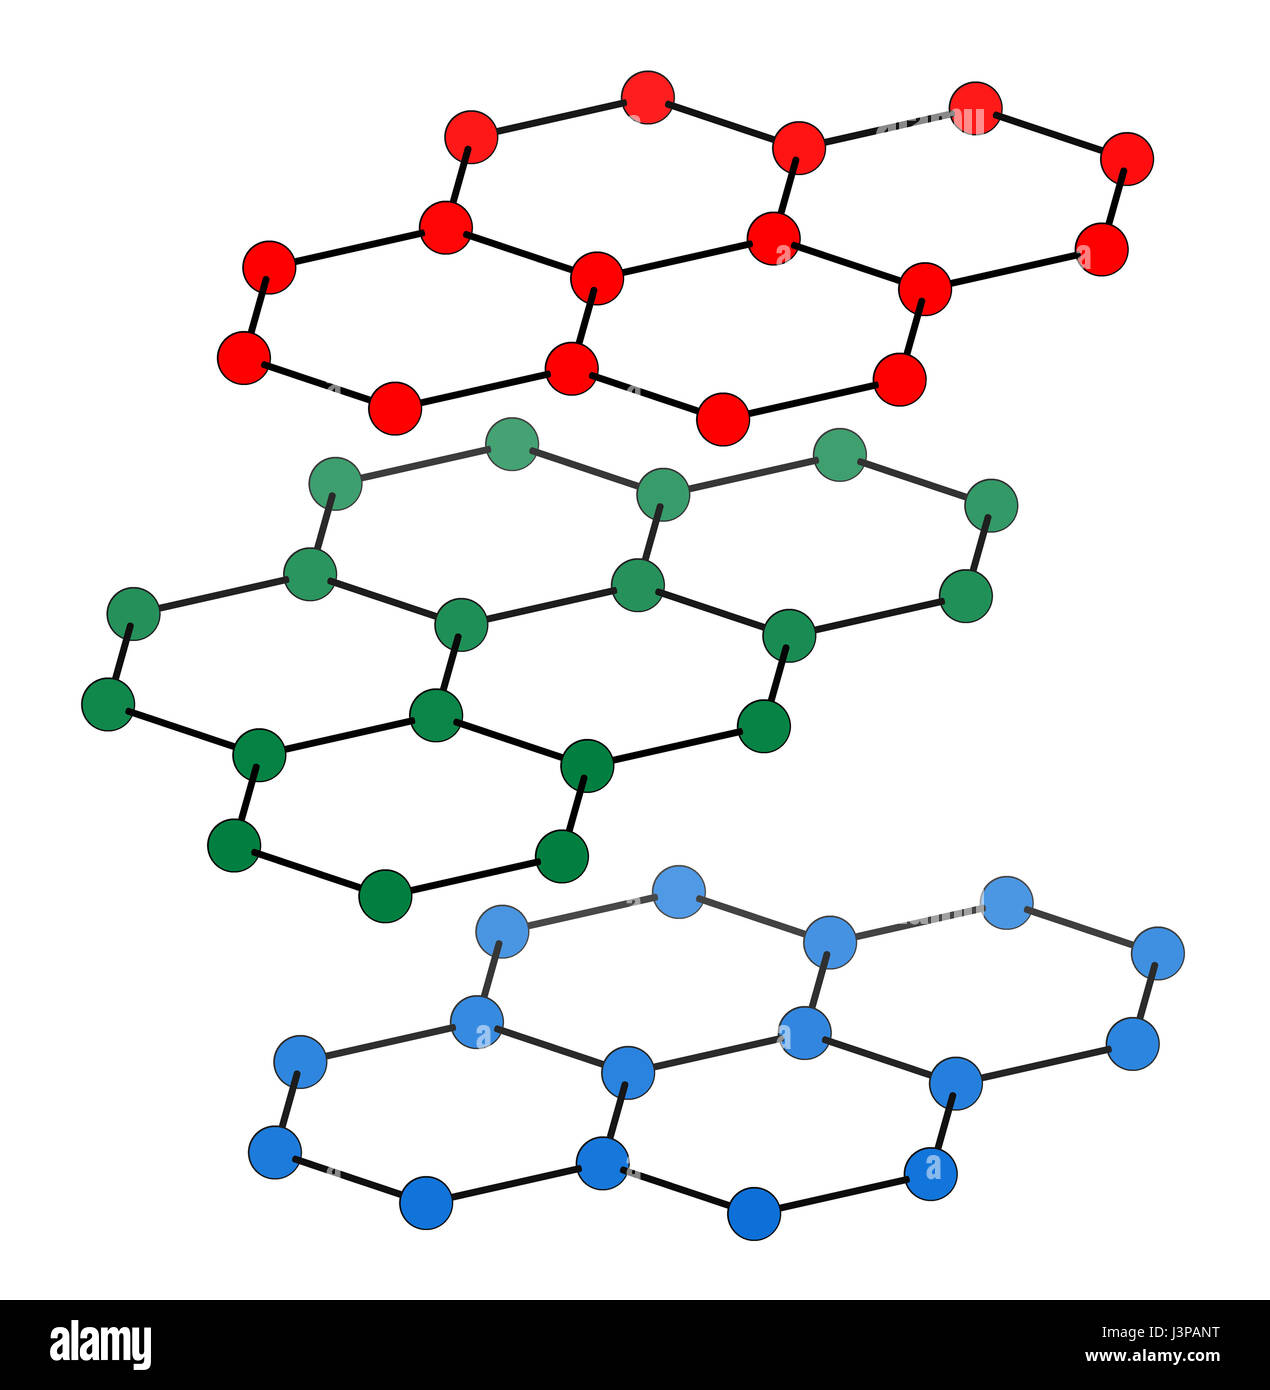 Graphit, Kristallstruktur. Auch bekannt als Bleistiftmine. Atome aus 3 Schichten werden angezeigt, um Layer zu stapeln zu veranschaulichen. Verschiedene Ebenen sind in Diff gezeigt. Stockfoto